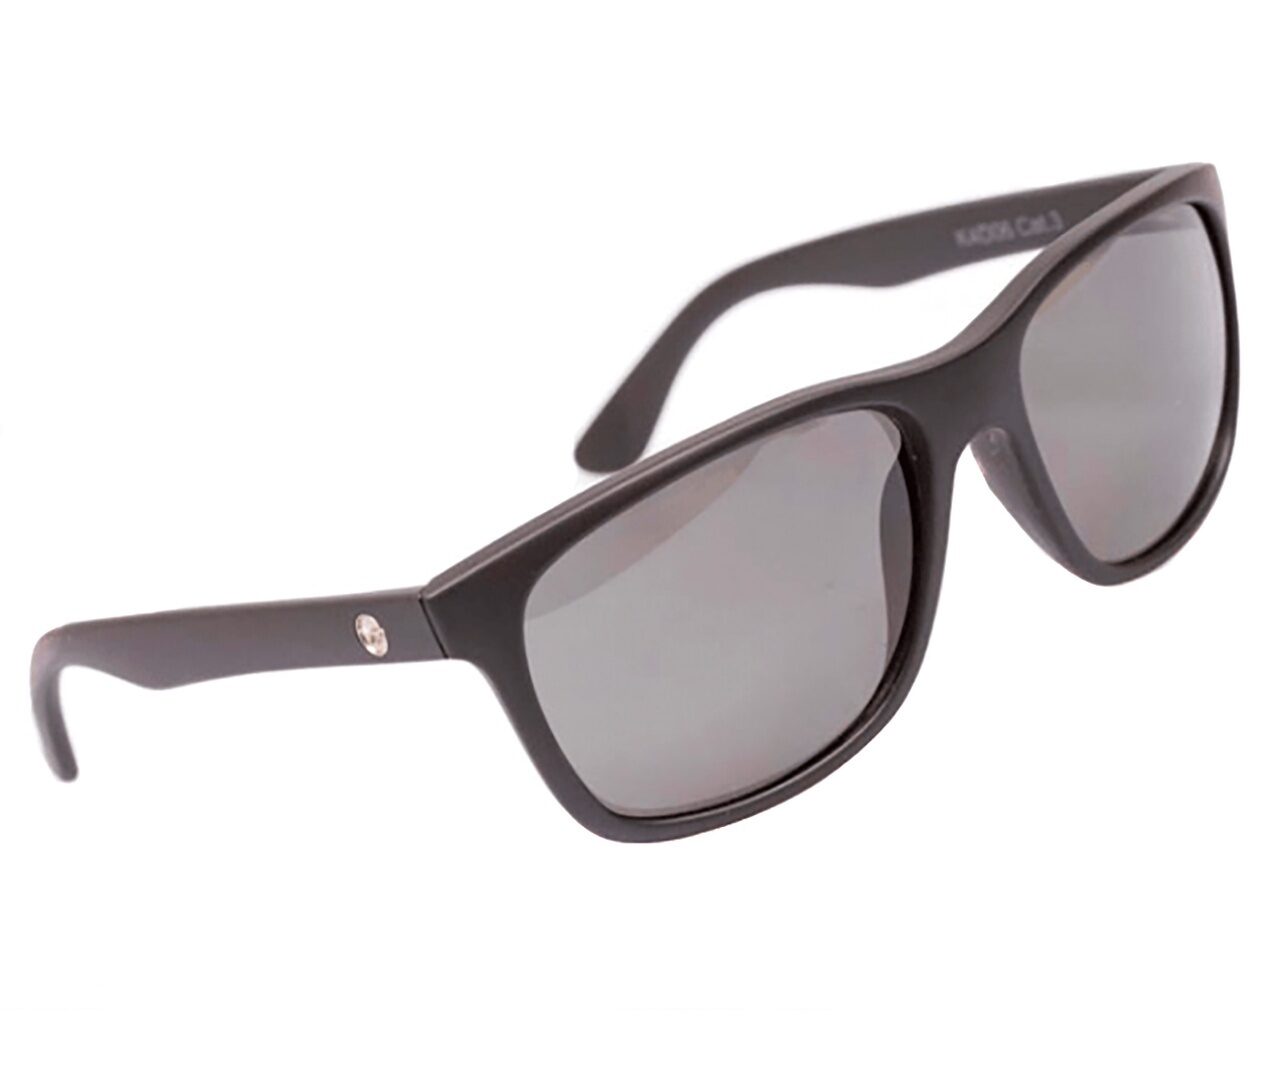 Очки поляризационные солнцезащитные Серые линзы Черная оправа Korda (Корда) - Sunglasses Classics Matt Black Shell and Grey Lens